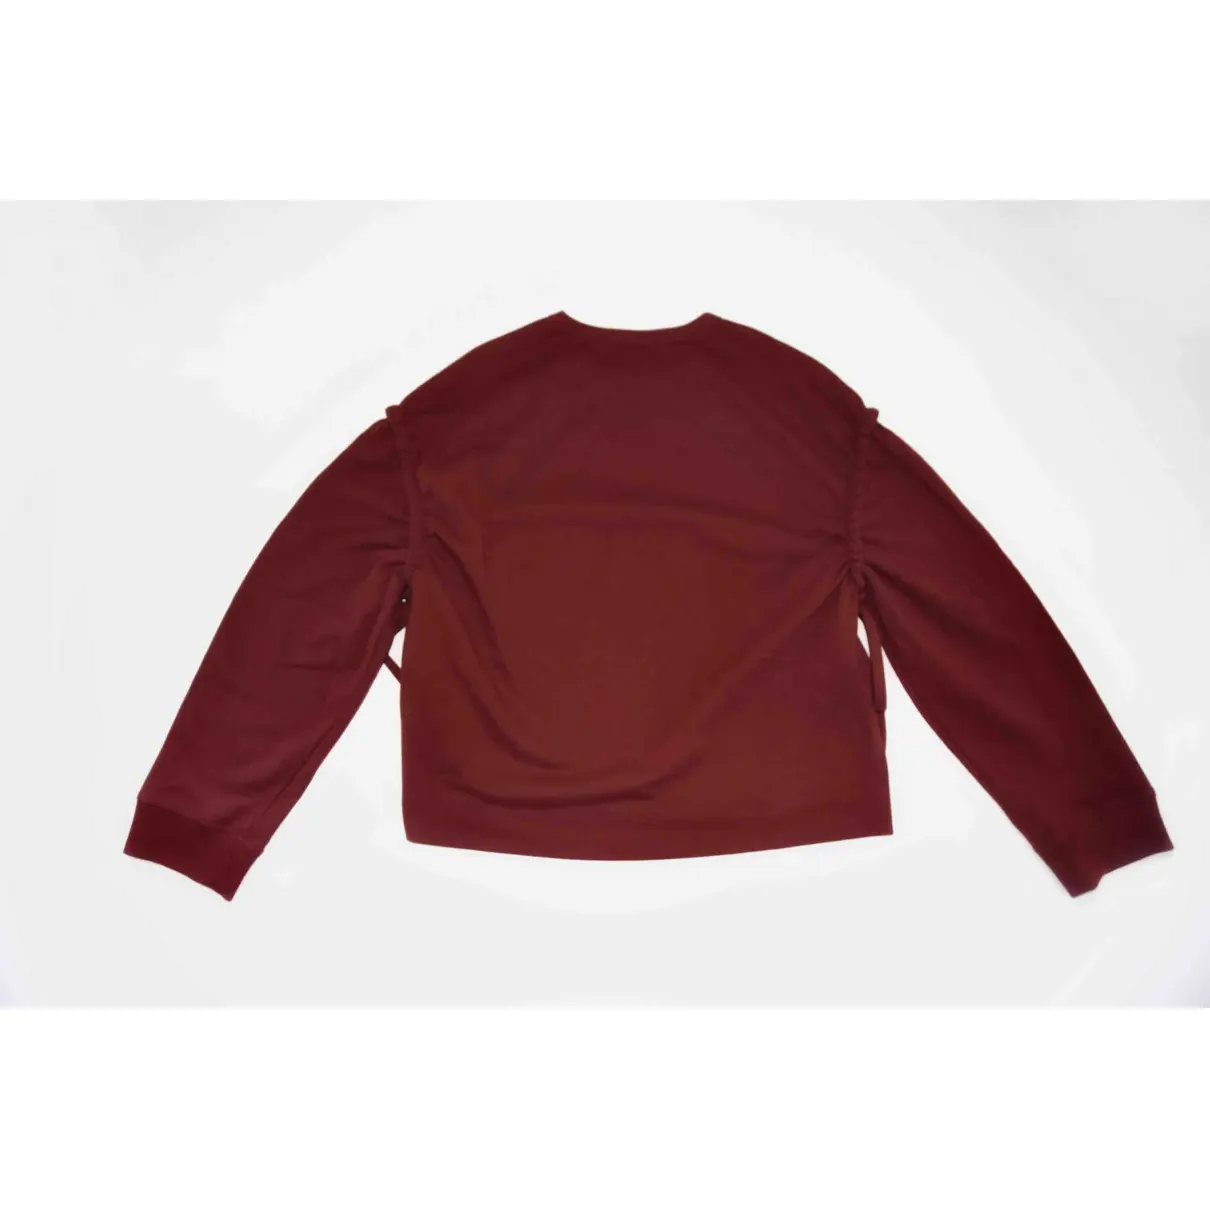 Buy Cédric Charlier Sweatshirt online